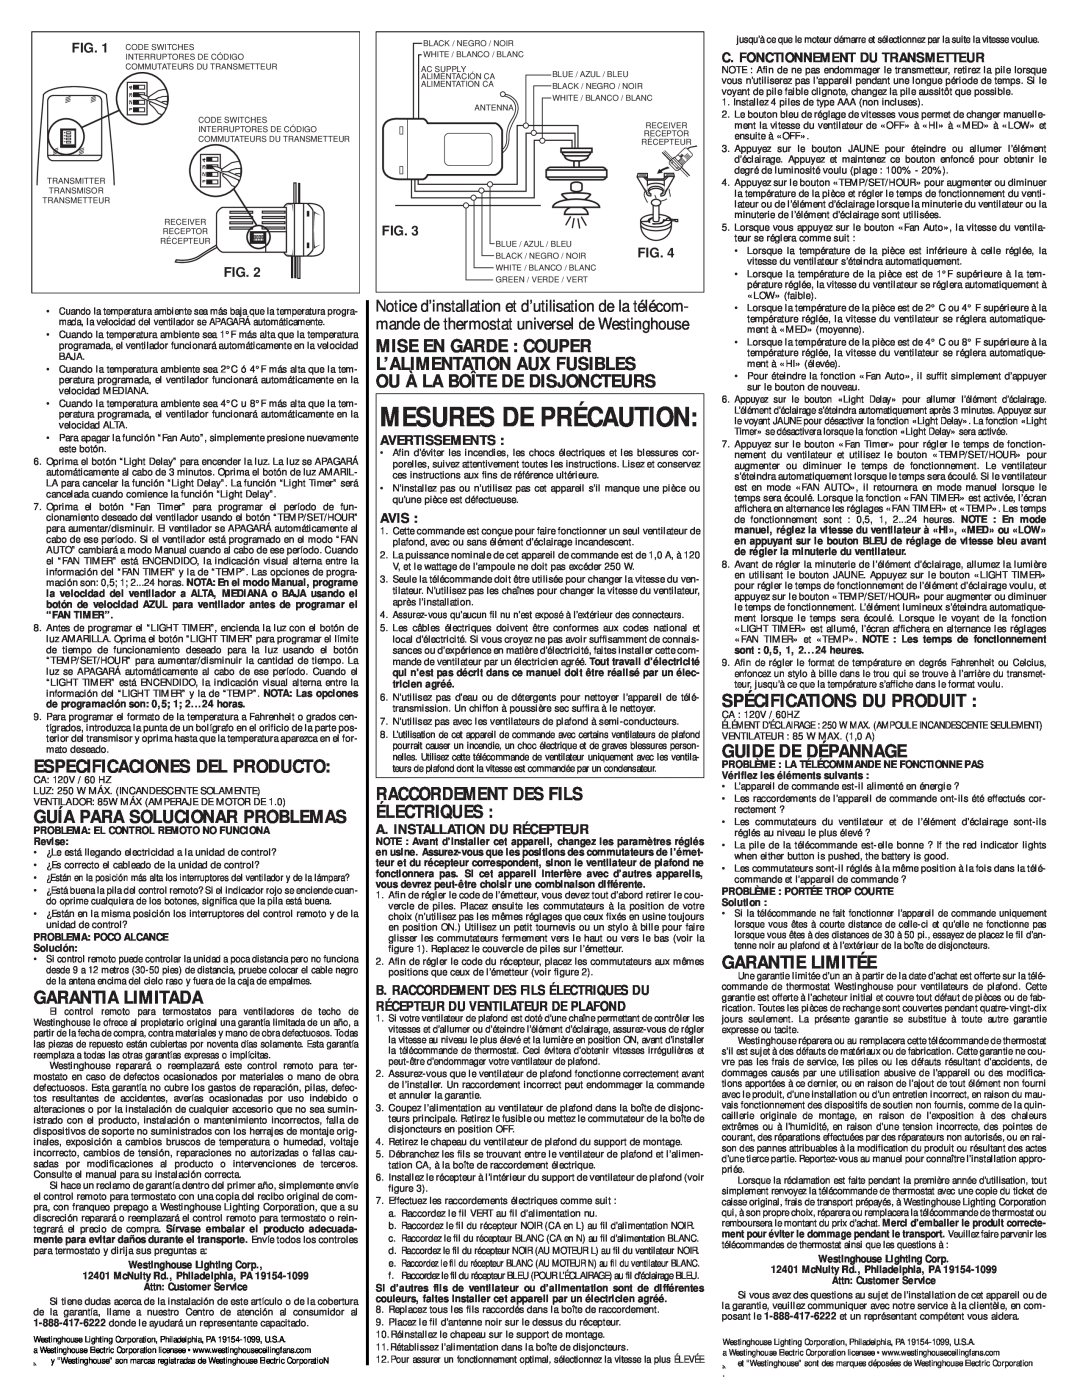 Westinghouse 77874 C. Fonctionnement Du Transmetteur, Avertissements, Avis, A. Installation Du Récepteur, Garantie Limitée 